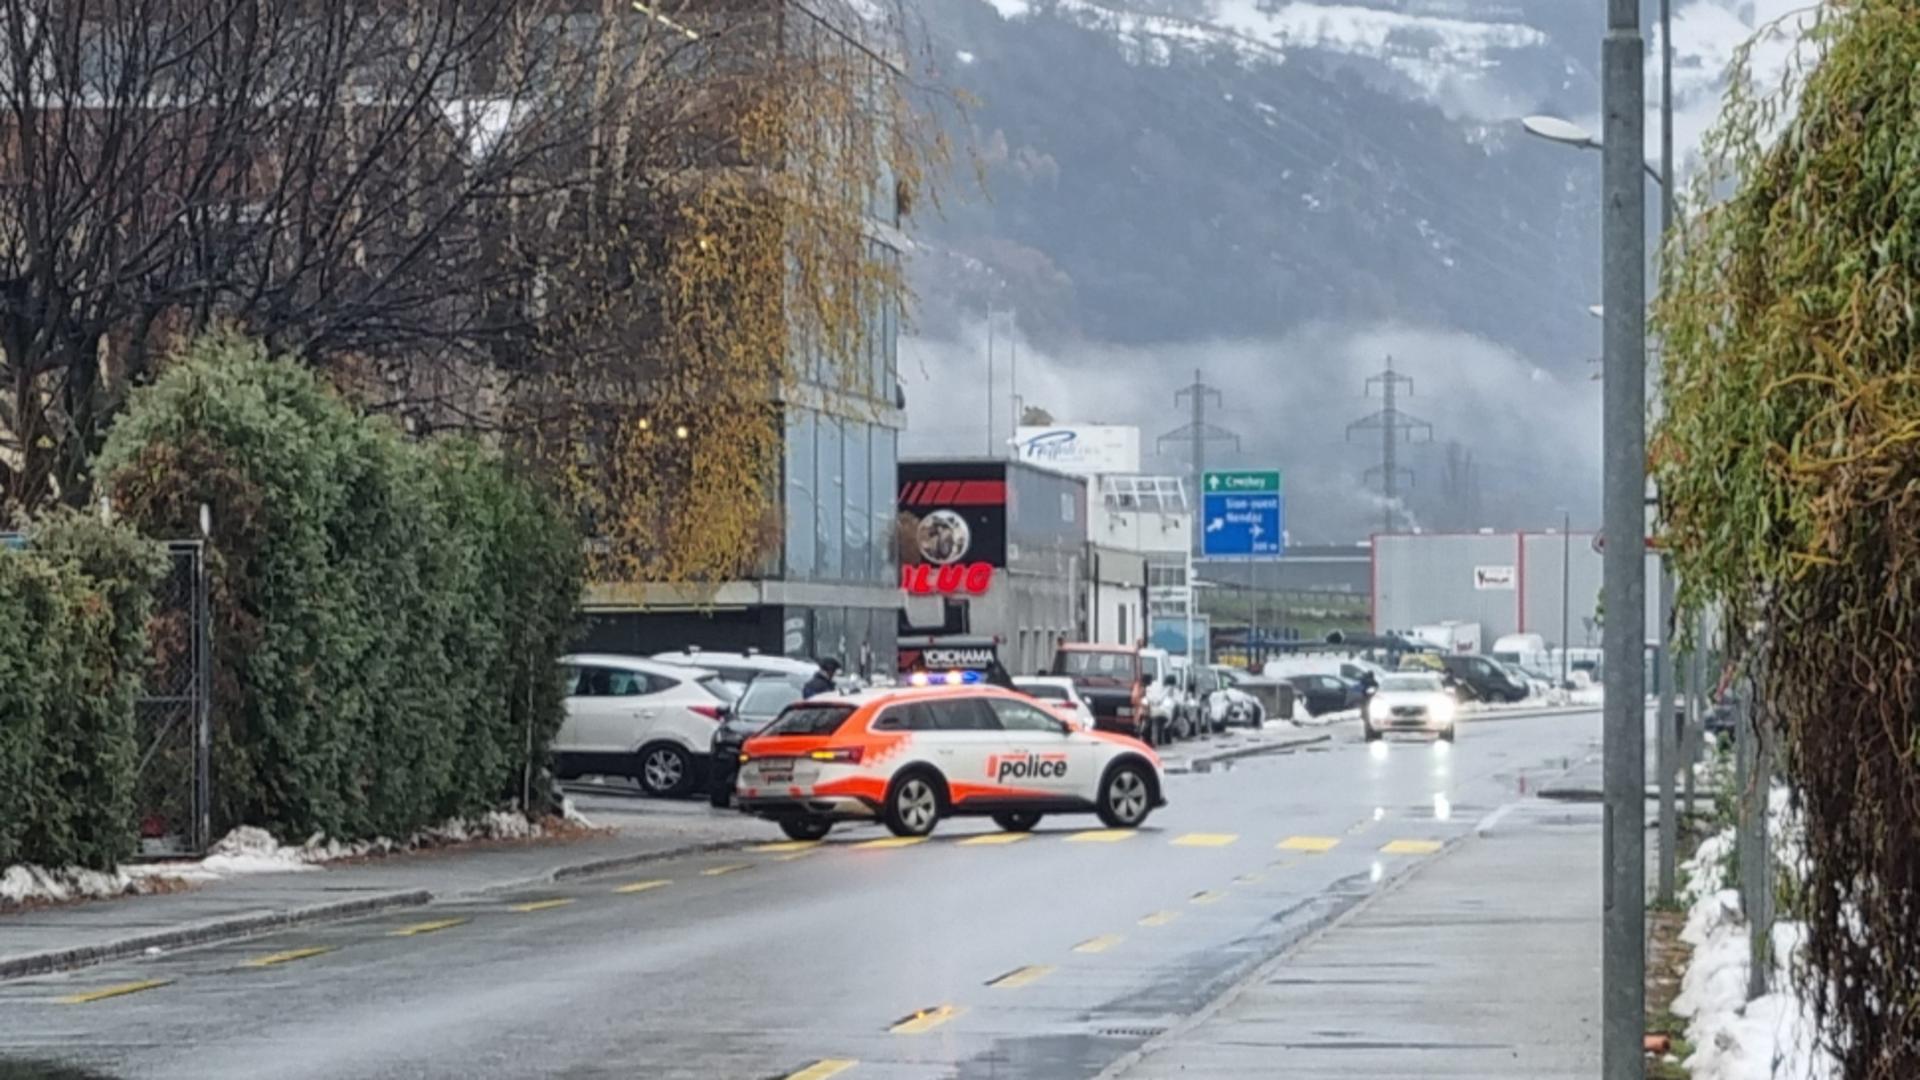 Atac armat în Elveția – Cel puțin 2 morți, acțiune amplă pentru prinderea atacatorului